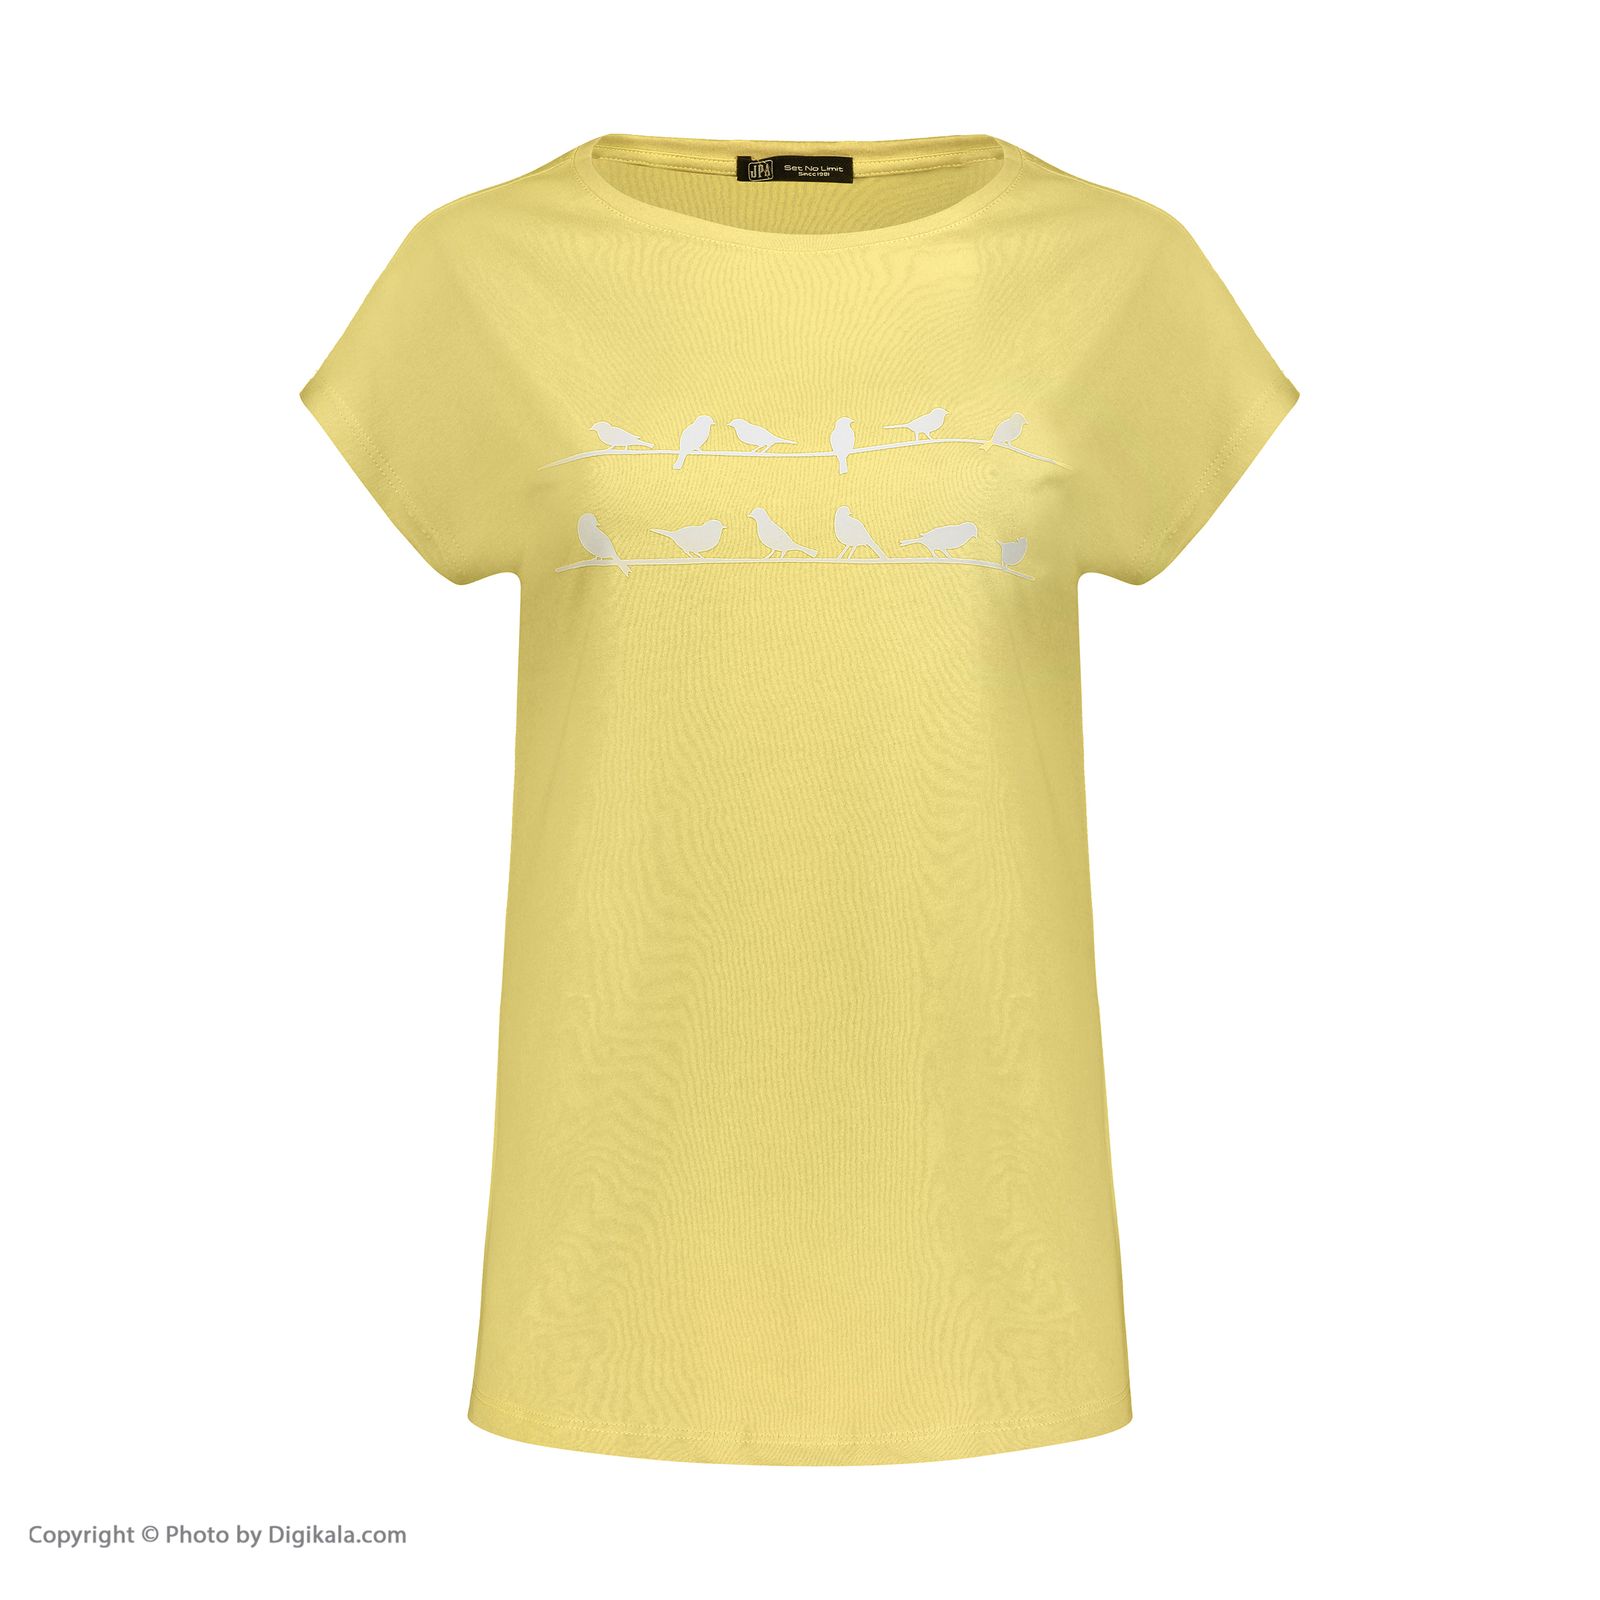 تی شرت زنانه جامه پوش آرا مدل 4012018380-16 -  - 2